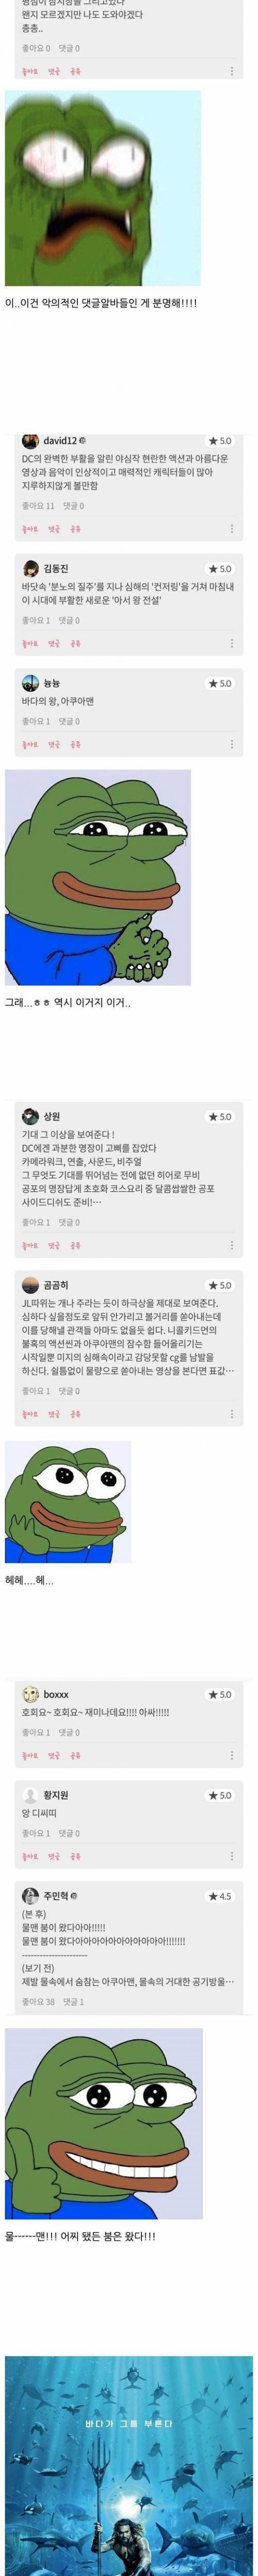 [스압] 영화 <아쿠아맨> 실시간 관람객 반응